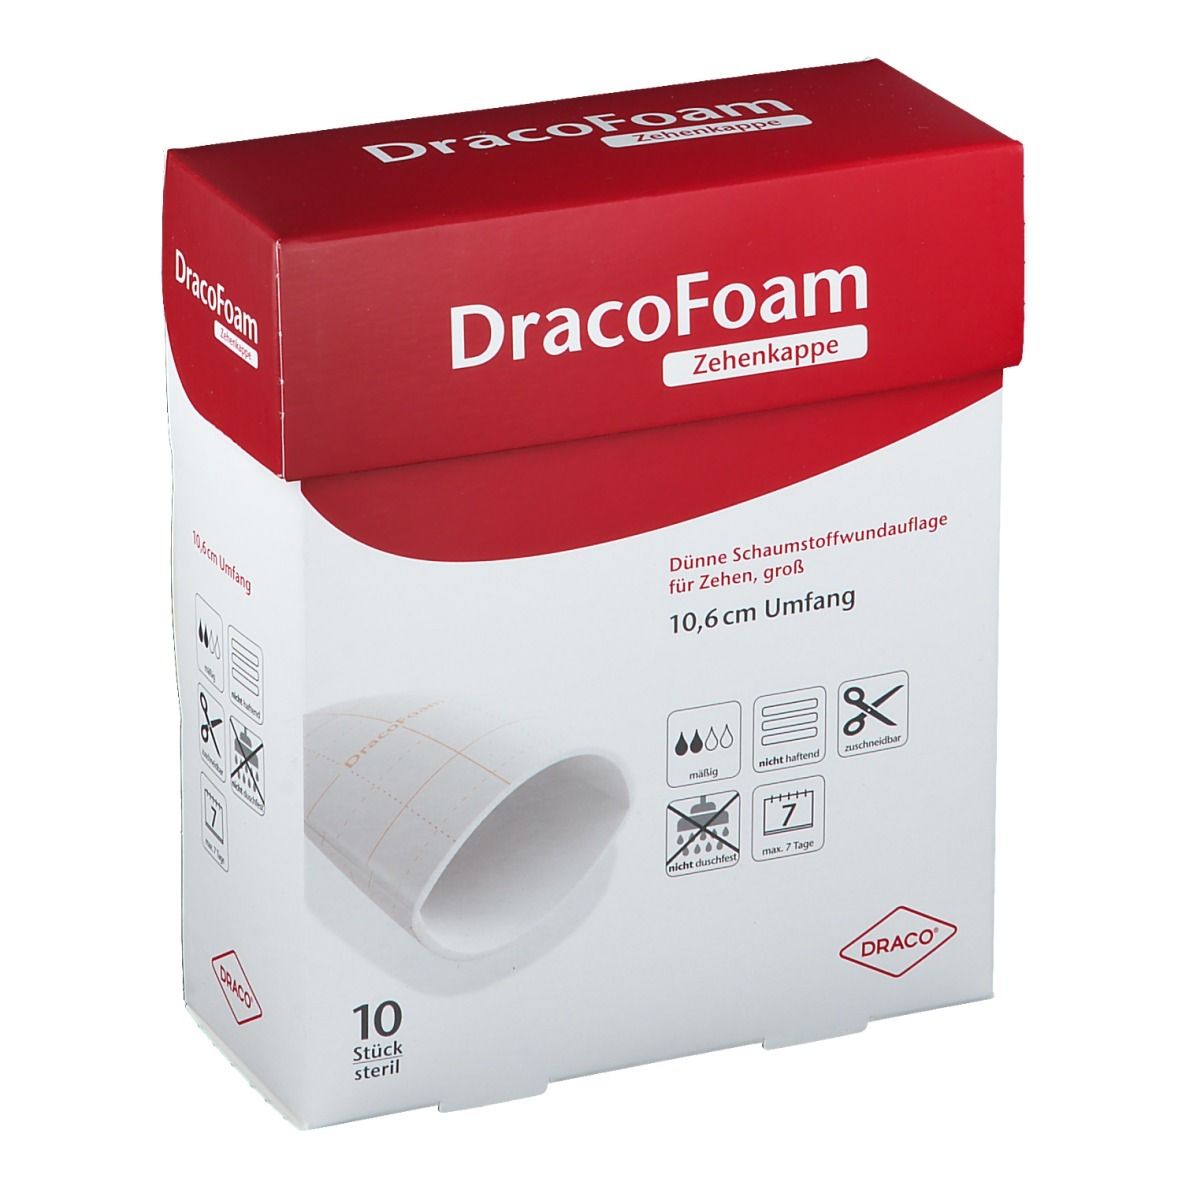 DracoFoam Zehenkappe bis 10,6 cm